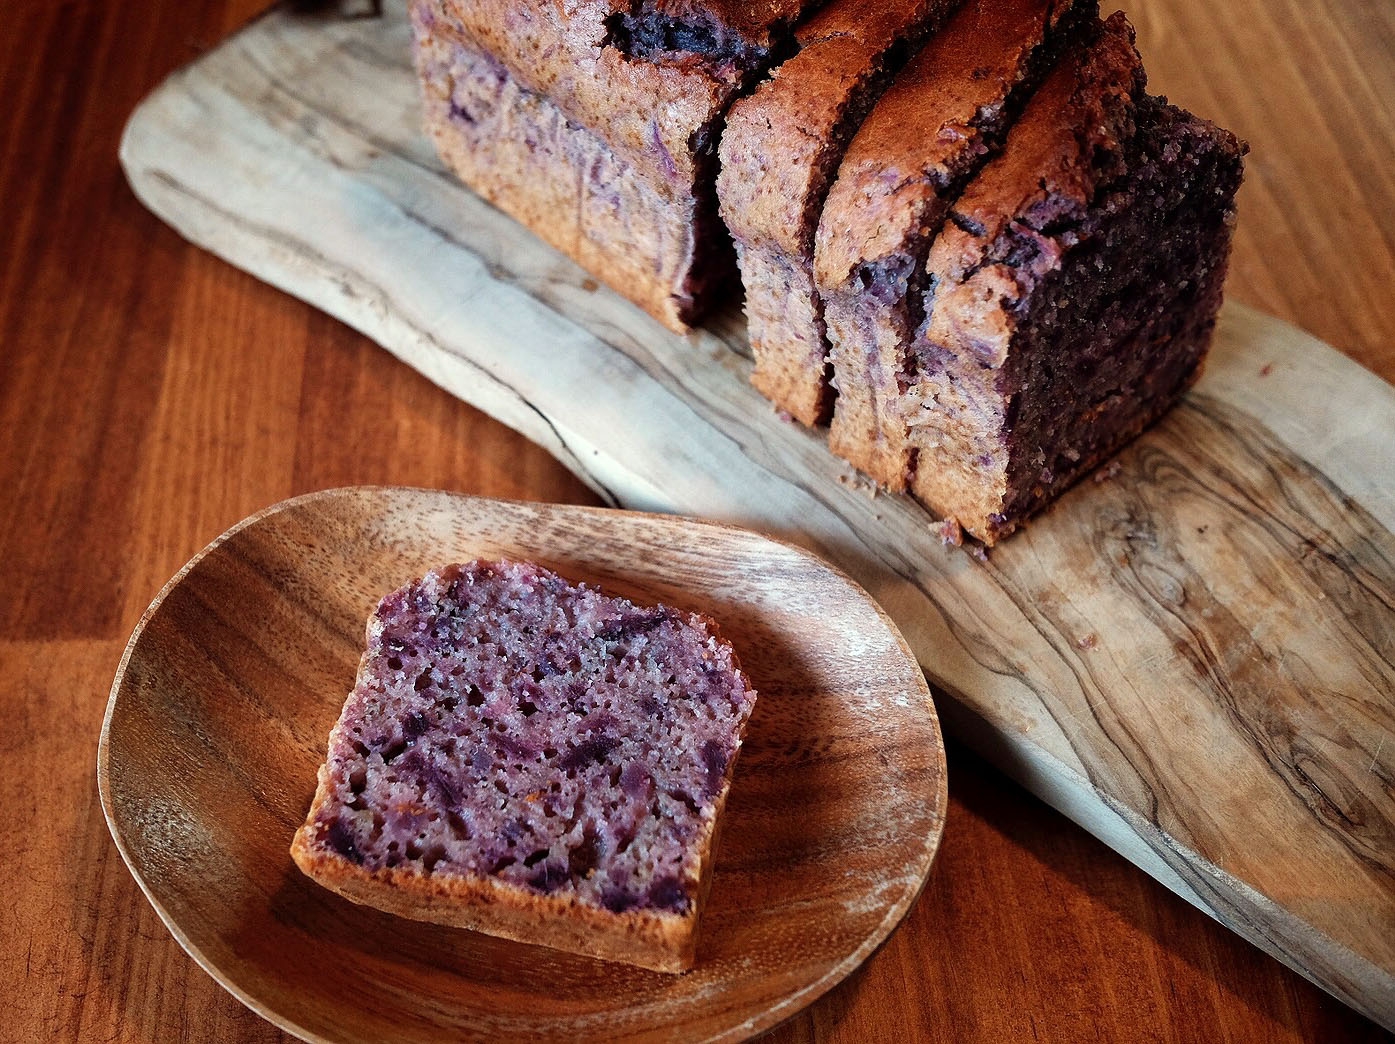 木目がしっかり出た細長いカッティングボードと木皿に盛られた紫芋のパウンドケーキ